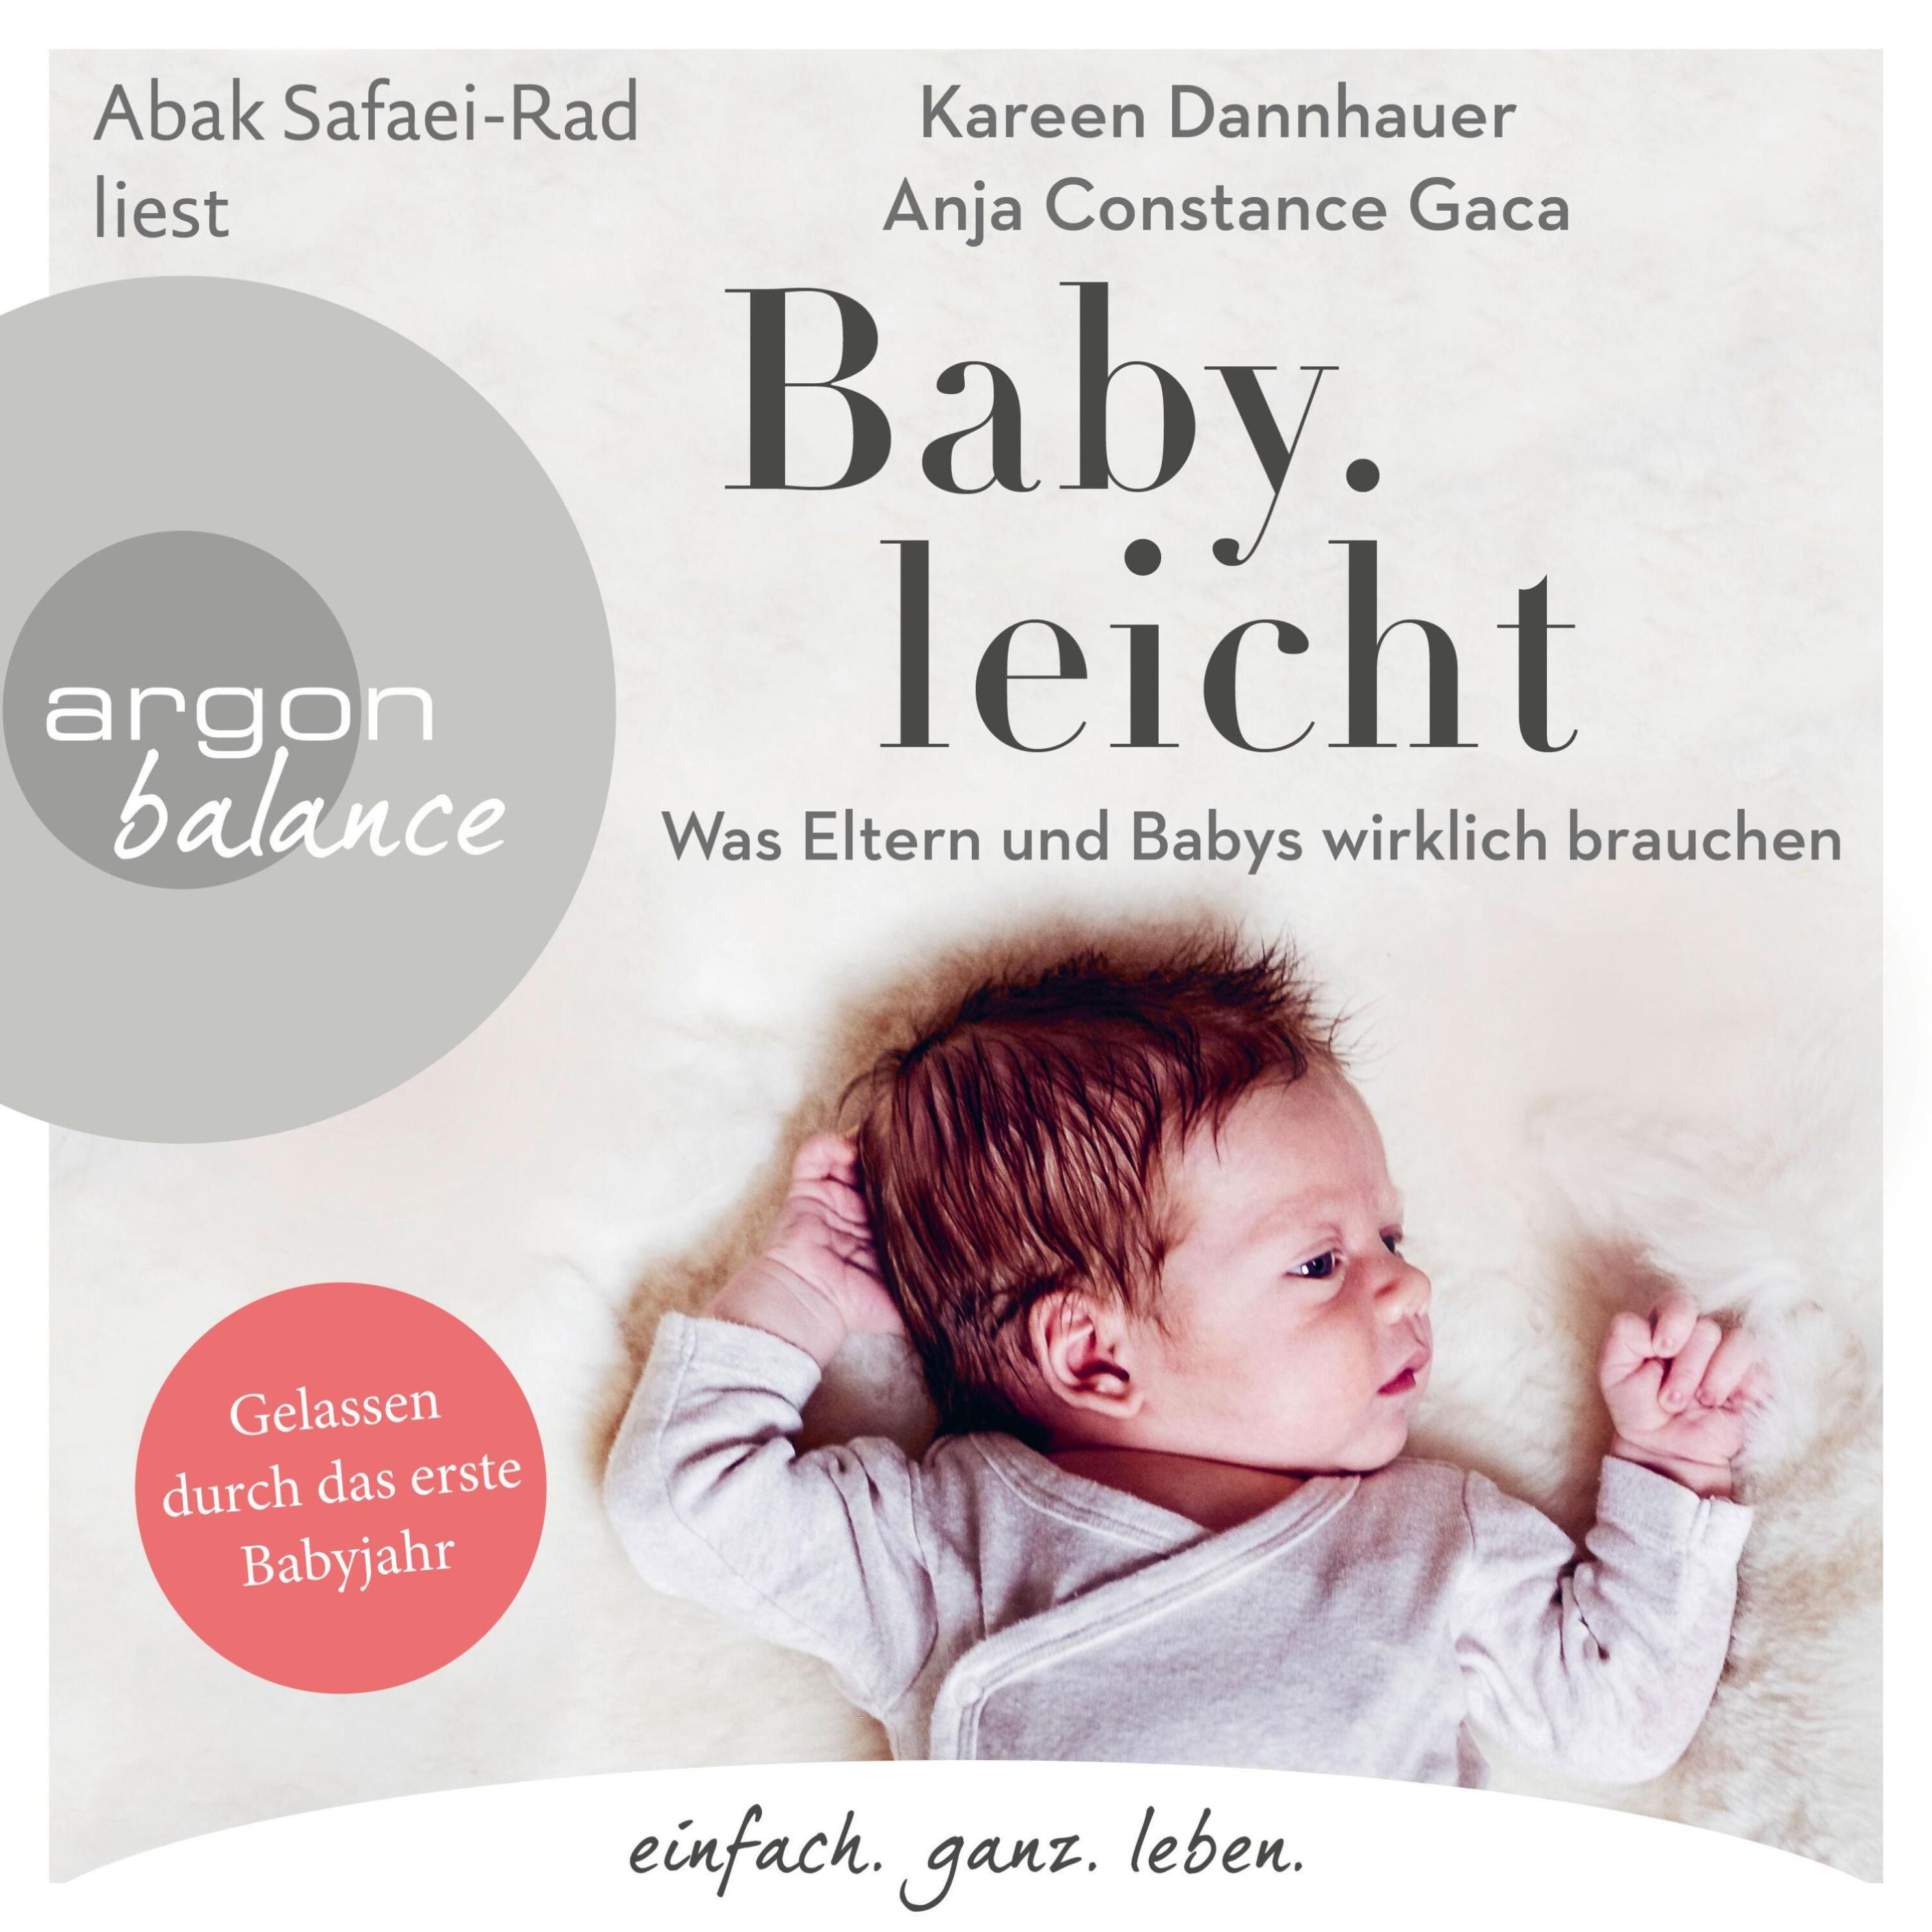 Baby.leicht Hörbuch sicher downloaden - jetzt bei Weltbild.at!